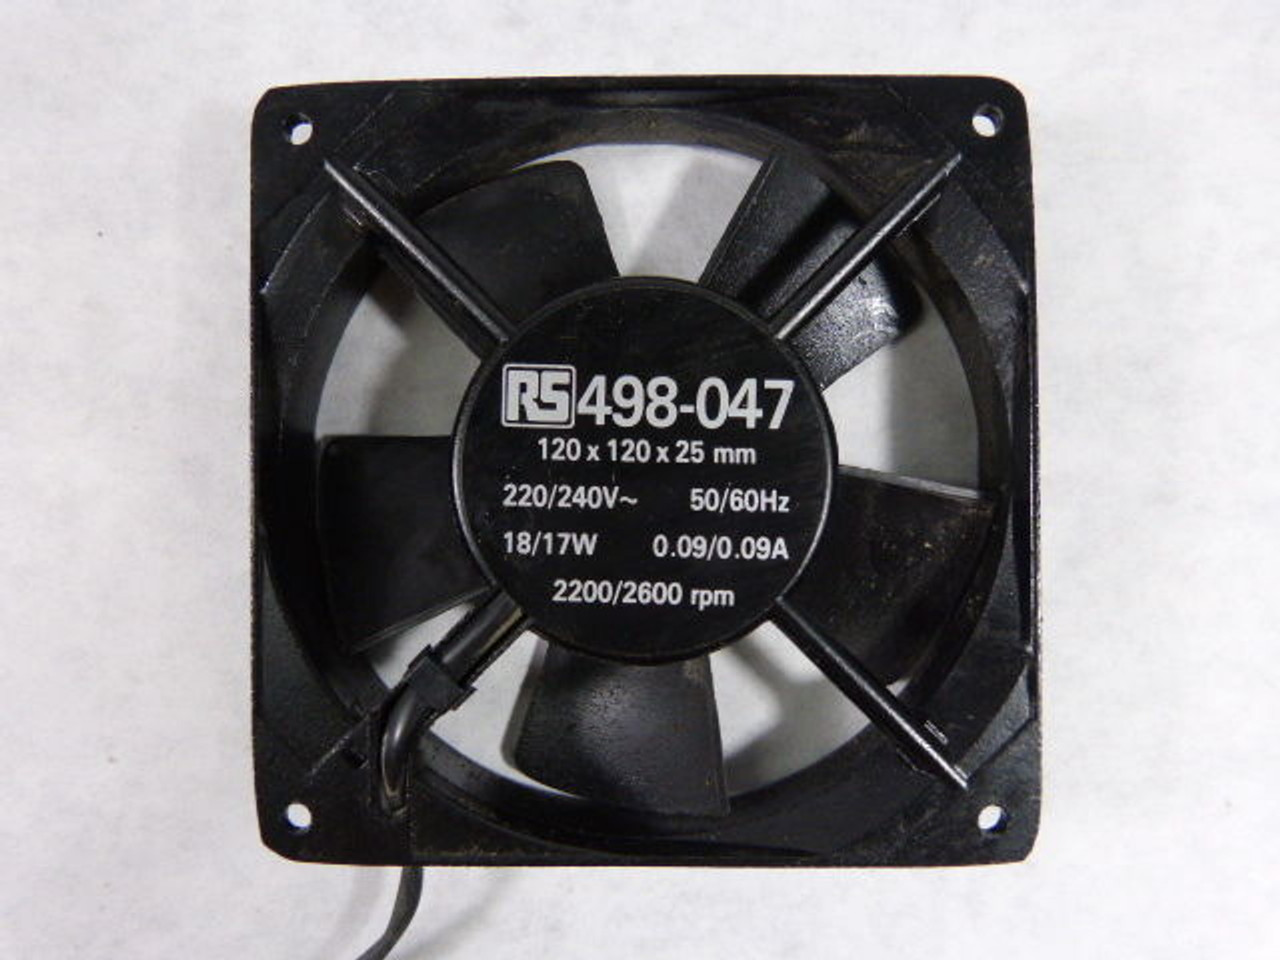 RS 498-047 Slim Fan 2200/2600RPM 220/240V 18/17W 120mm x 120mm x 25mm USED